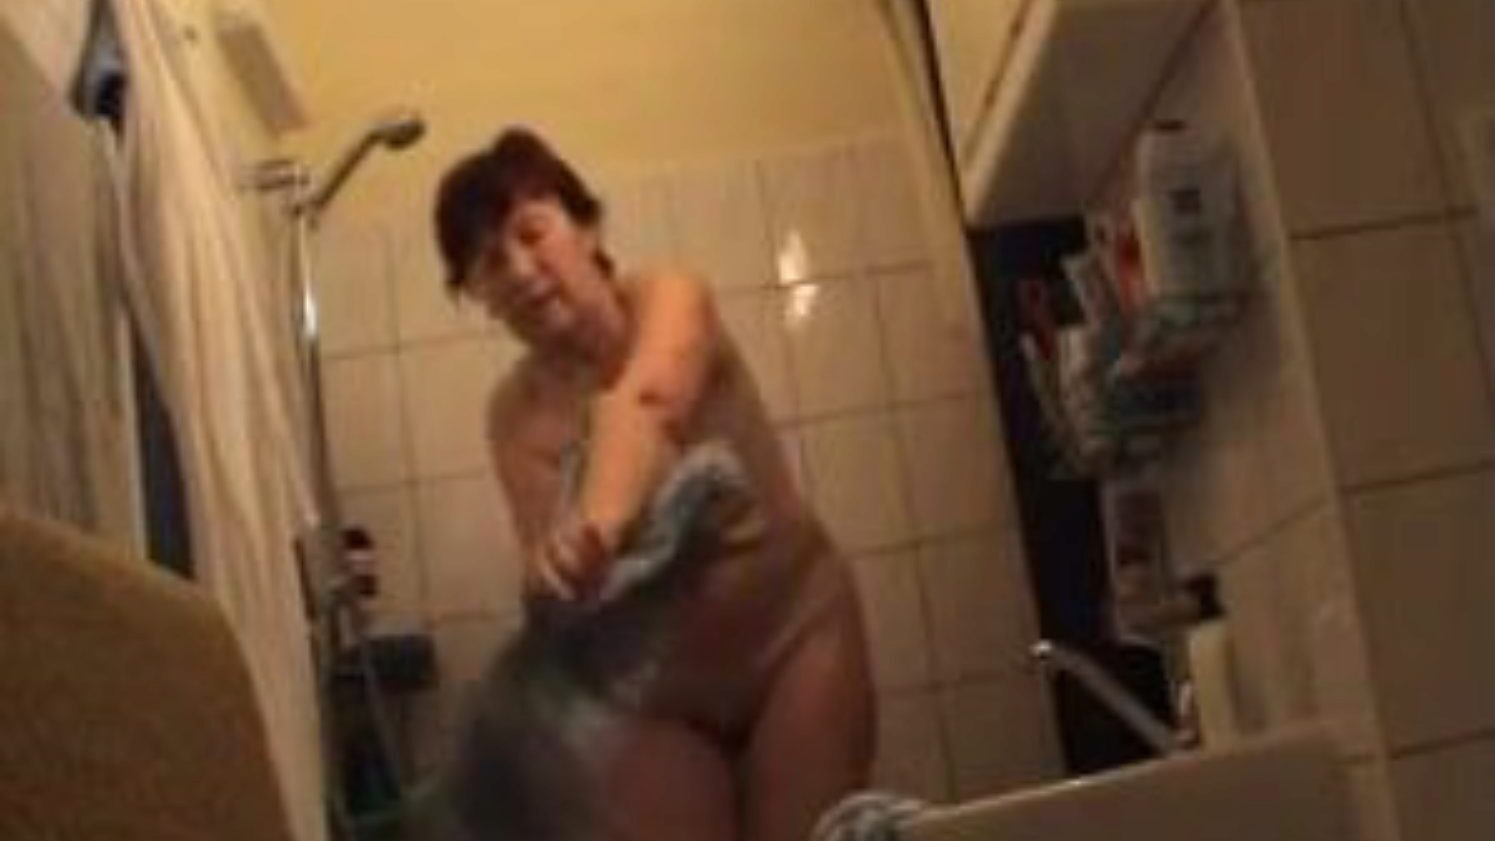 Deutsch Oma nackt im Badezimmer, kostenlose deutsche Porno-Videoanzeige Deutsche Oma nackt im Badezimmer Film Szene auf Xhamster, der größten Sex-Tube-Site mit Tonnen von kostenlosen deutschen nackten Oma & reifen Porno-Videos